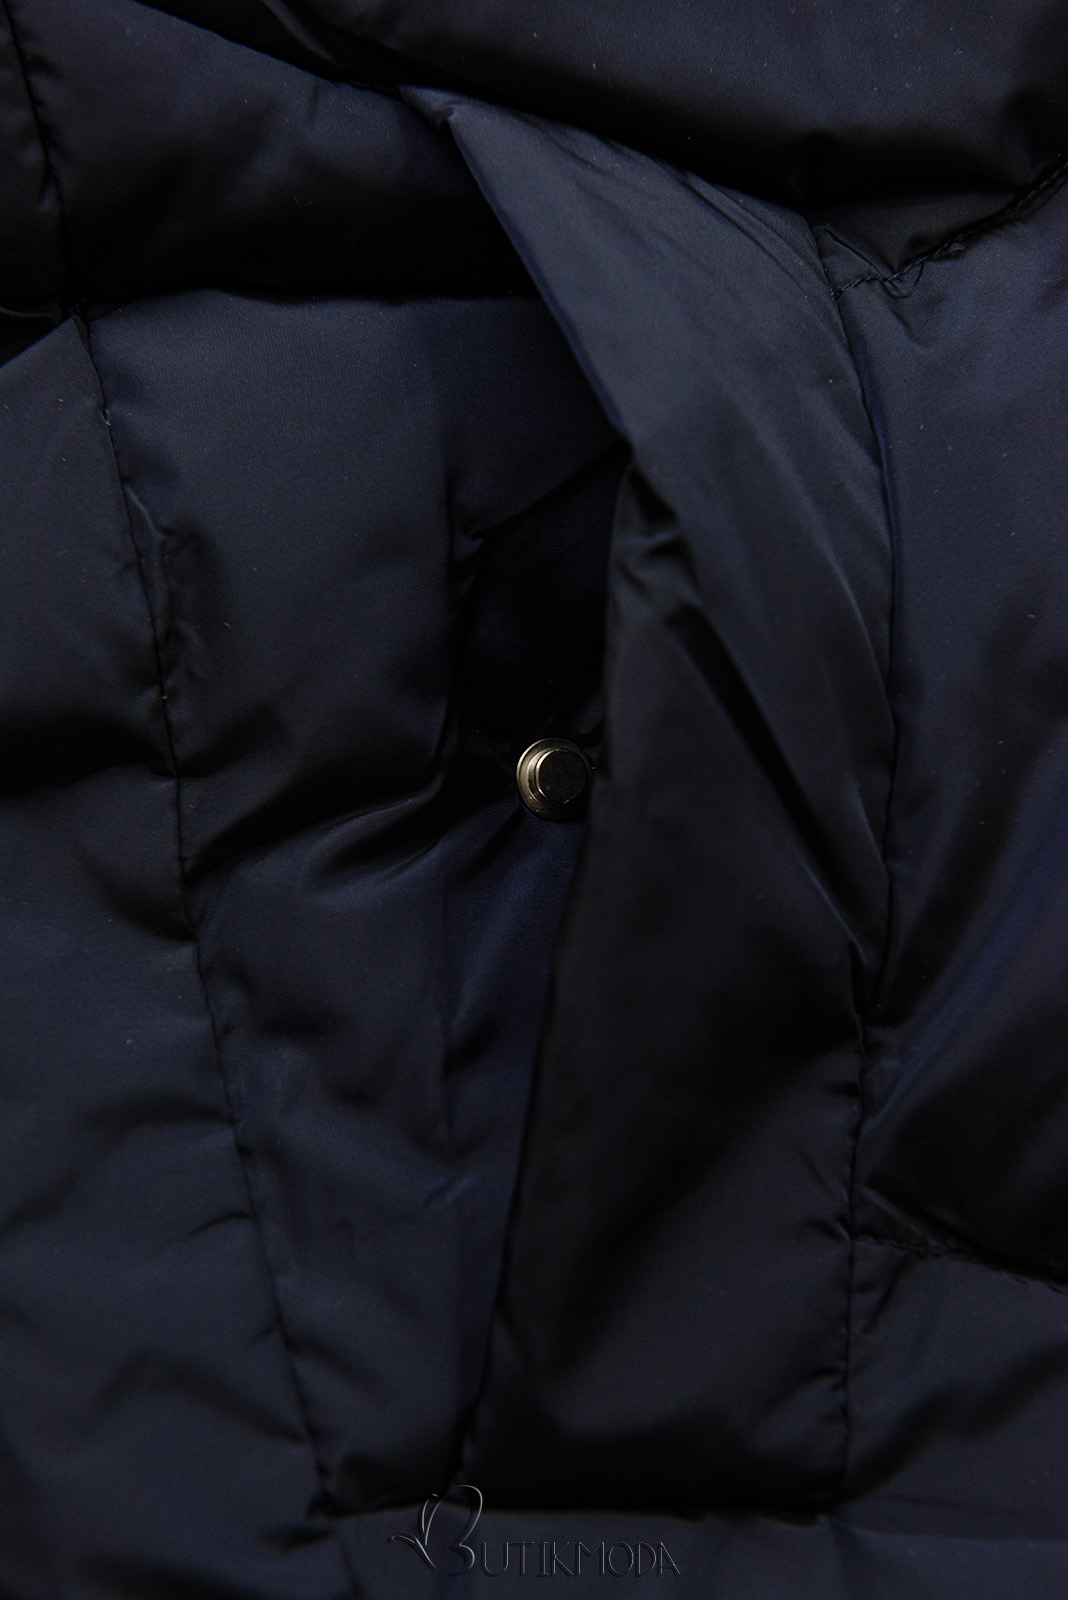 Sötétkék színű téli kapucnis dzseki műszőrmével